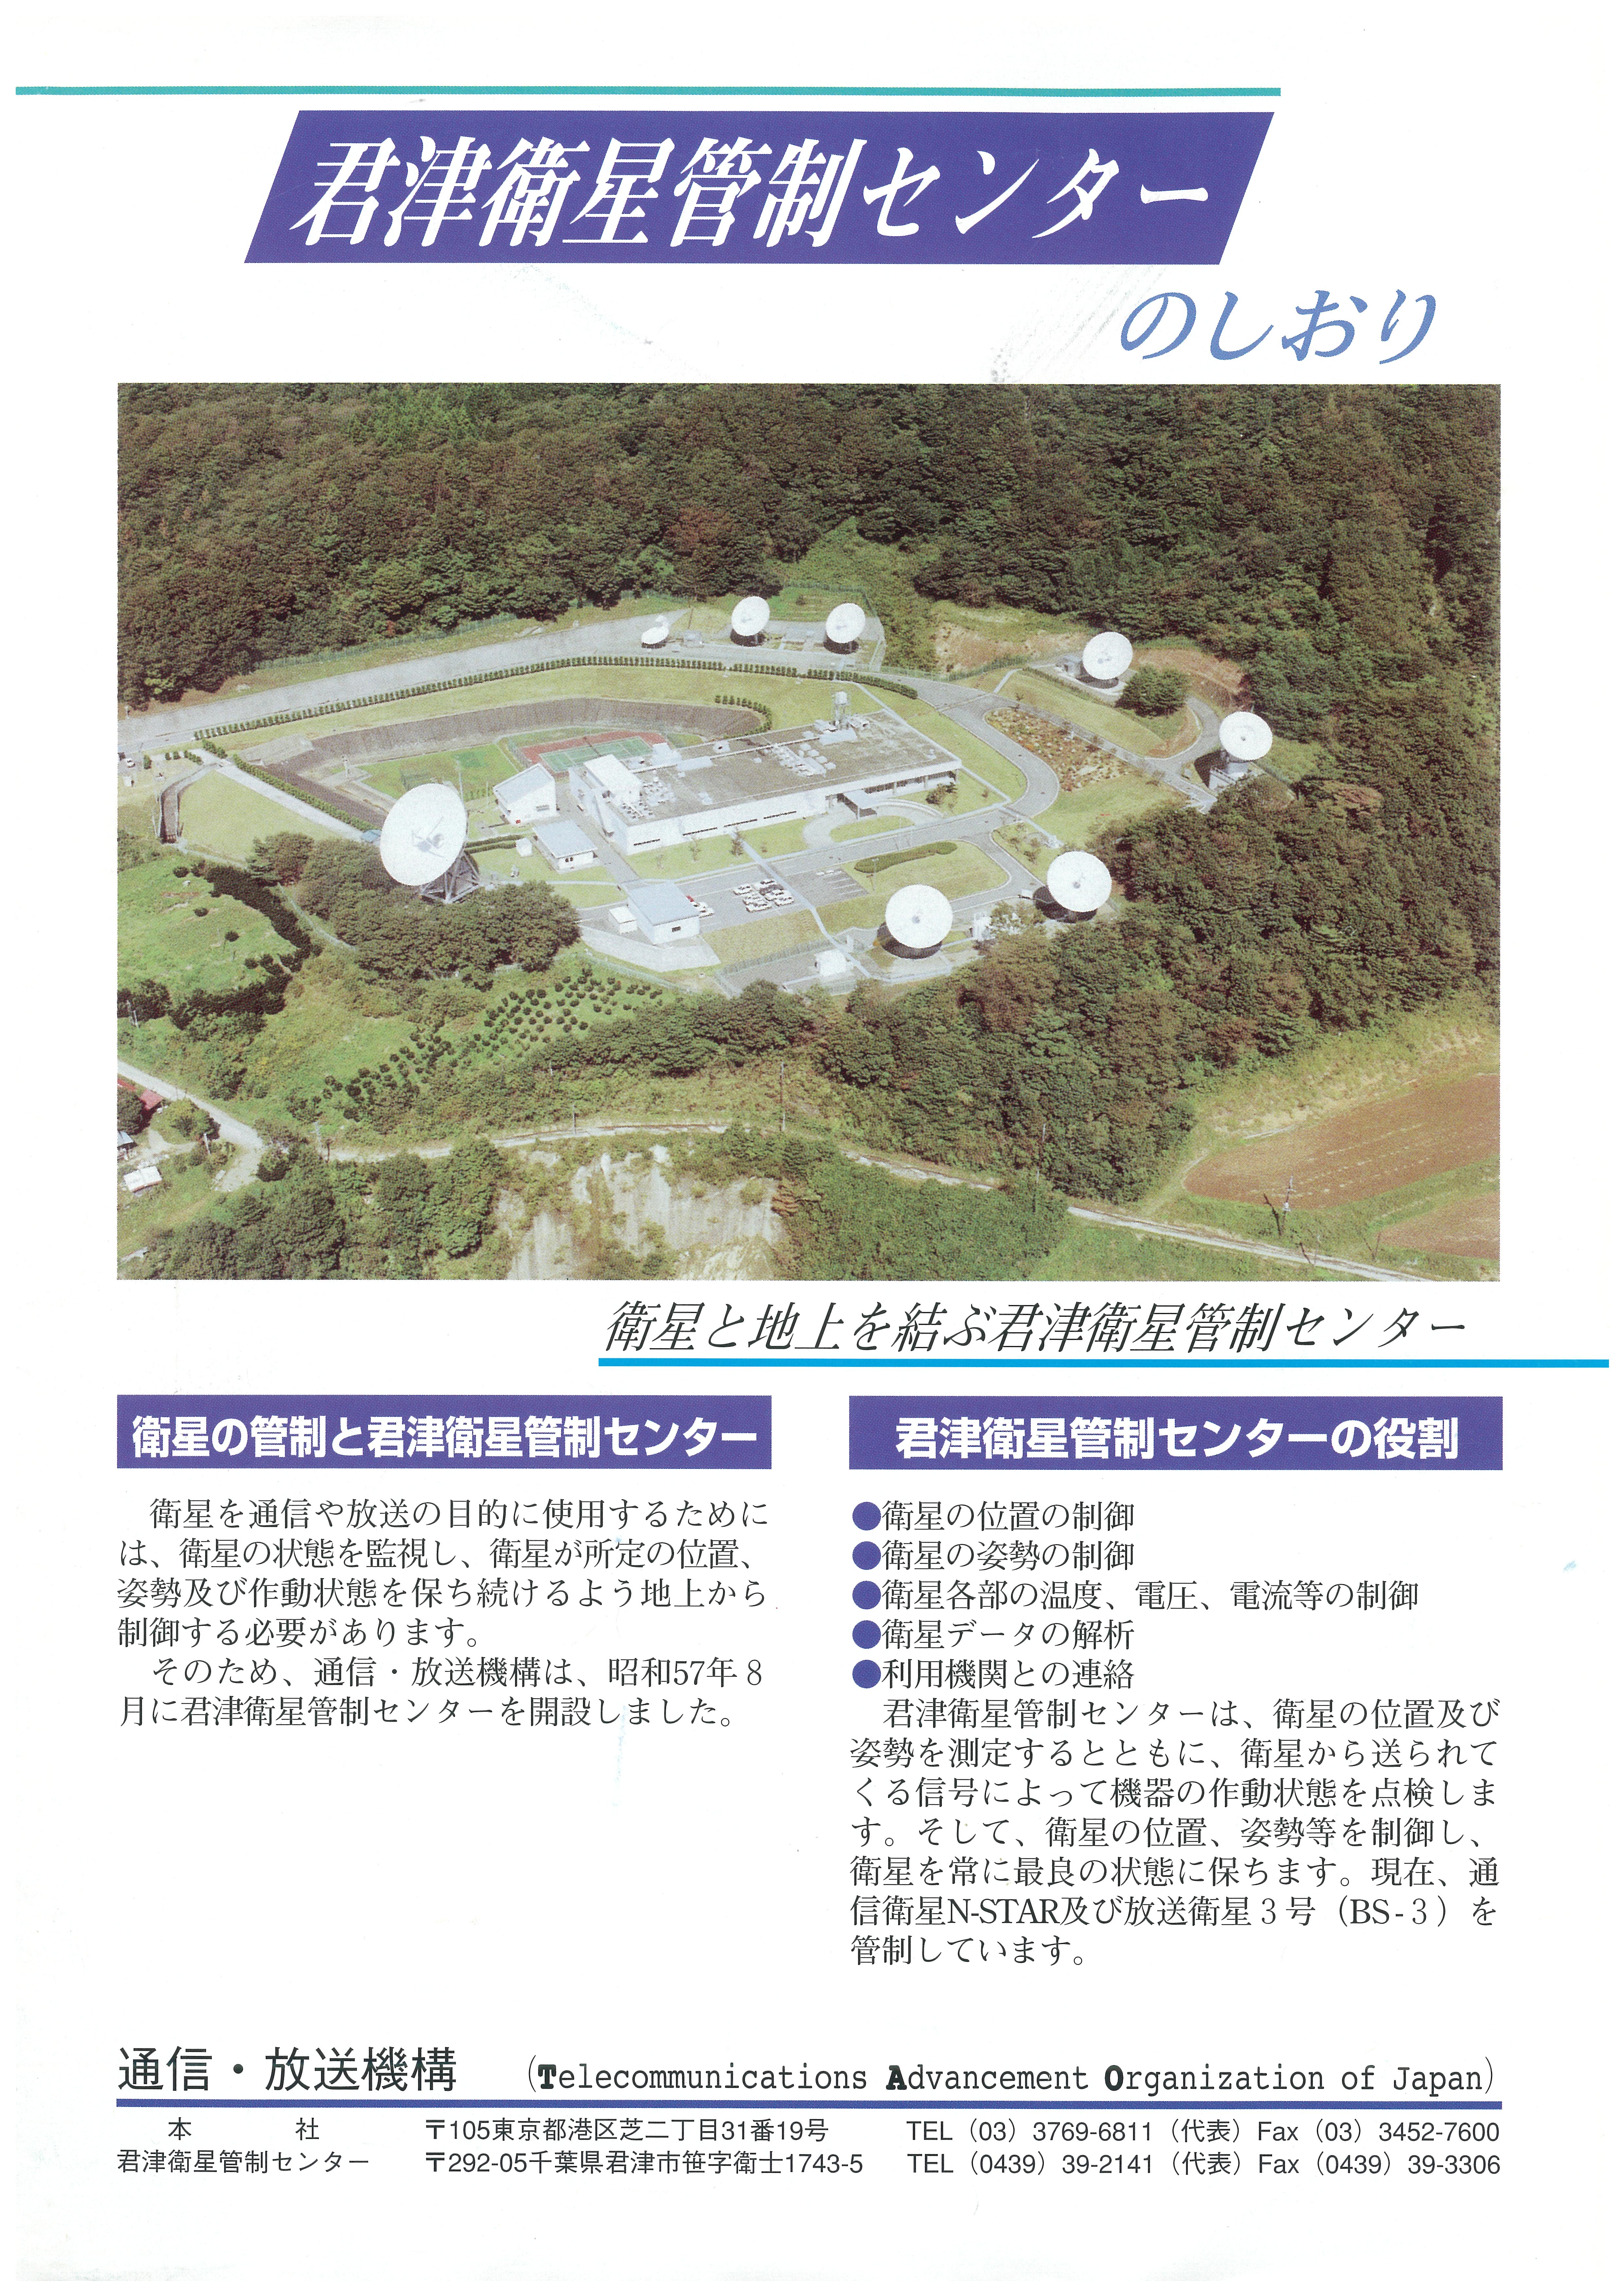 君津衛星管制センターパンフレット1ページ目